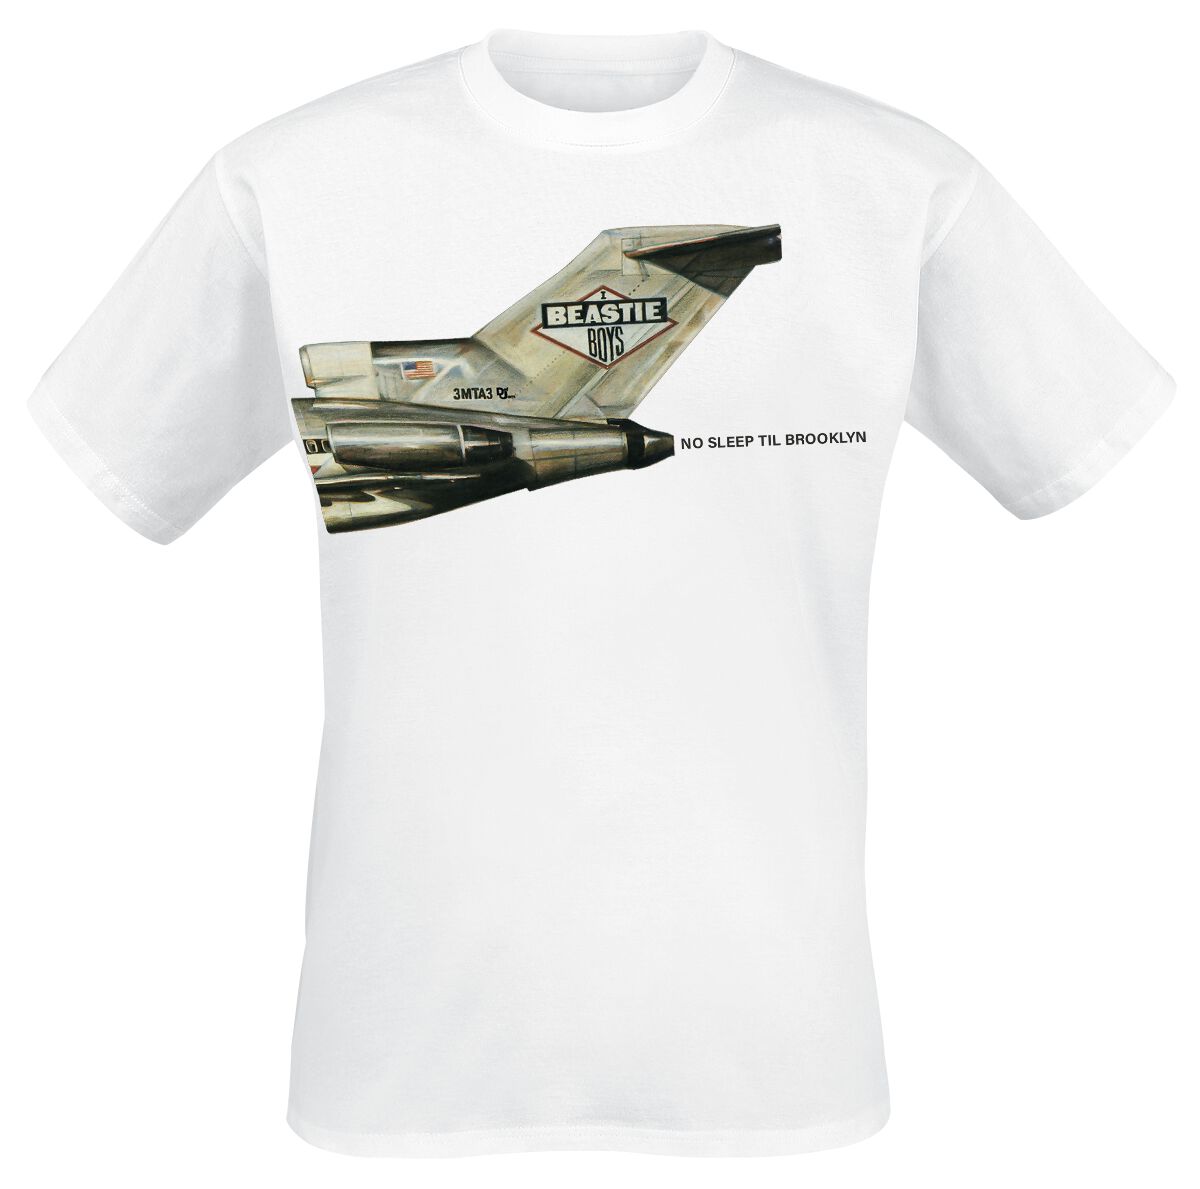 Beastie Boys T-Shirt - No Sleep Til Brooklyn Plane - S bis 3XL - für Männer - Größe S - weiß  - Lizenziertes Merchandise!